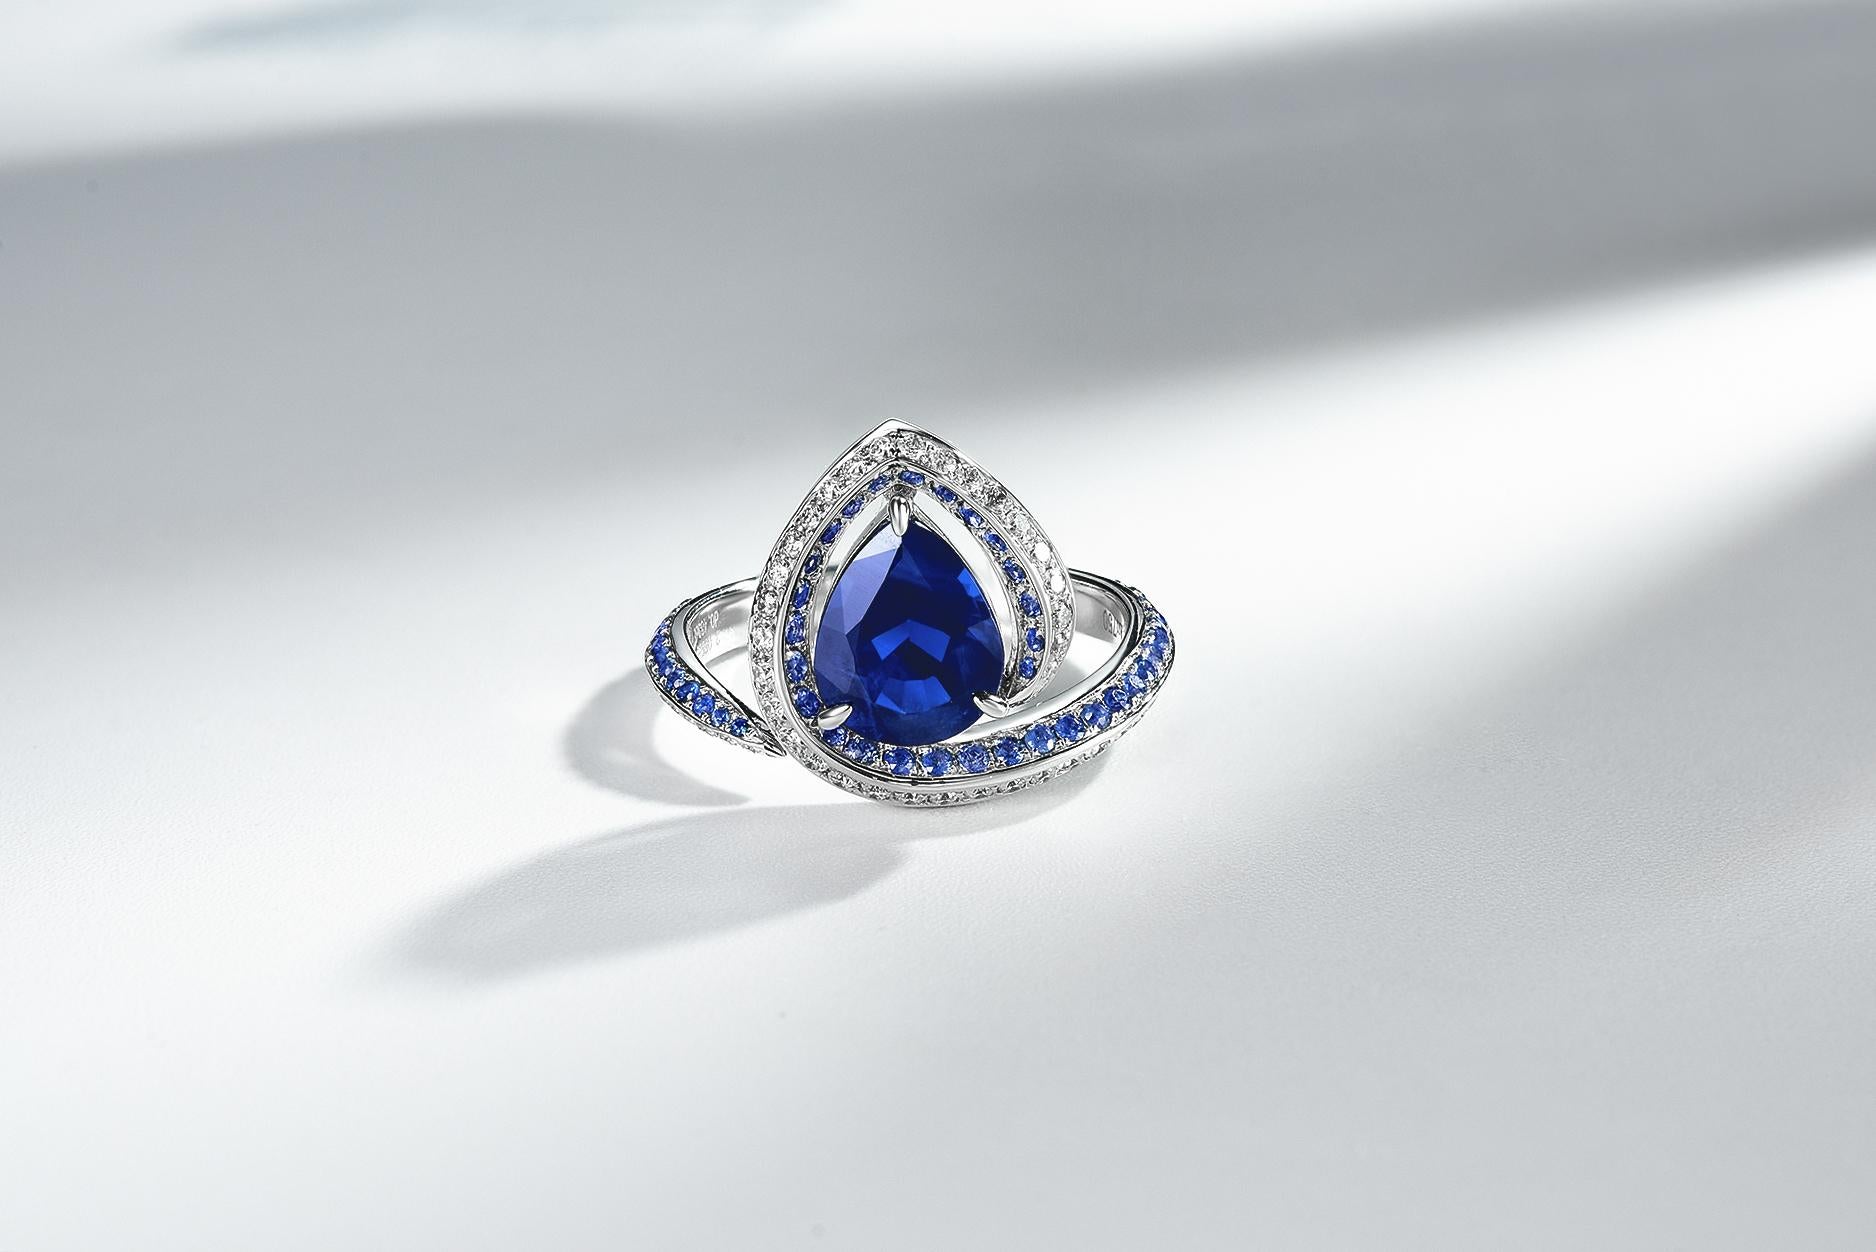 Dies ist ein birnenförmiger blauer Saphir-Diamantring, bei dem der Saphir den Kopf einer Schlange darstellt und der Ring selbst der Körper der Schlange ist, der den Finger umgibt. Es handelt sich um ein sehr einzigartiges und dennoch kühnes Design,